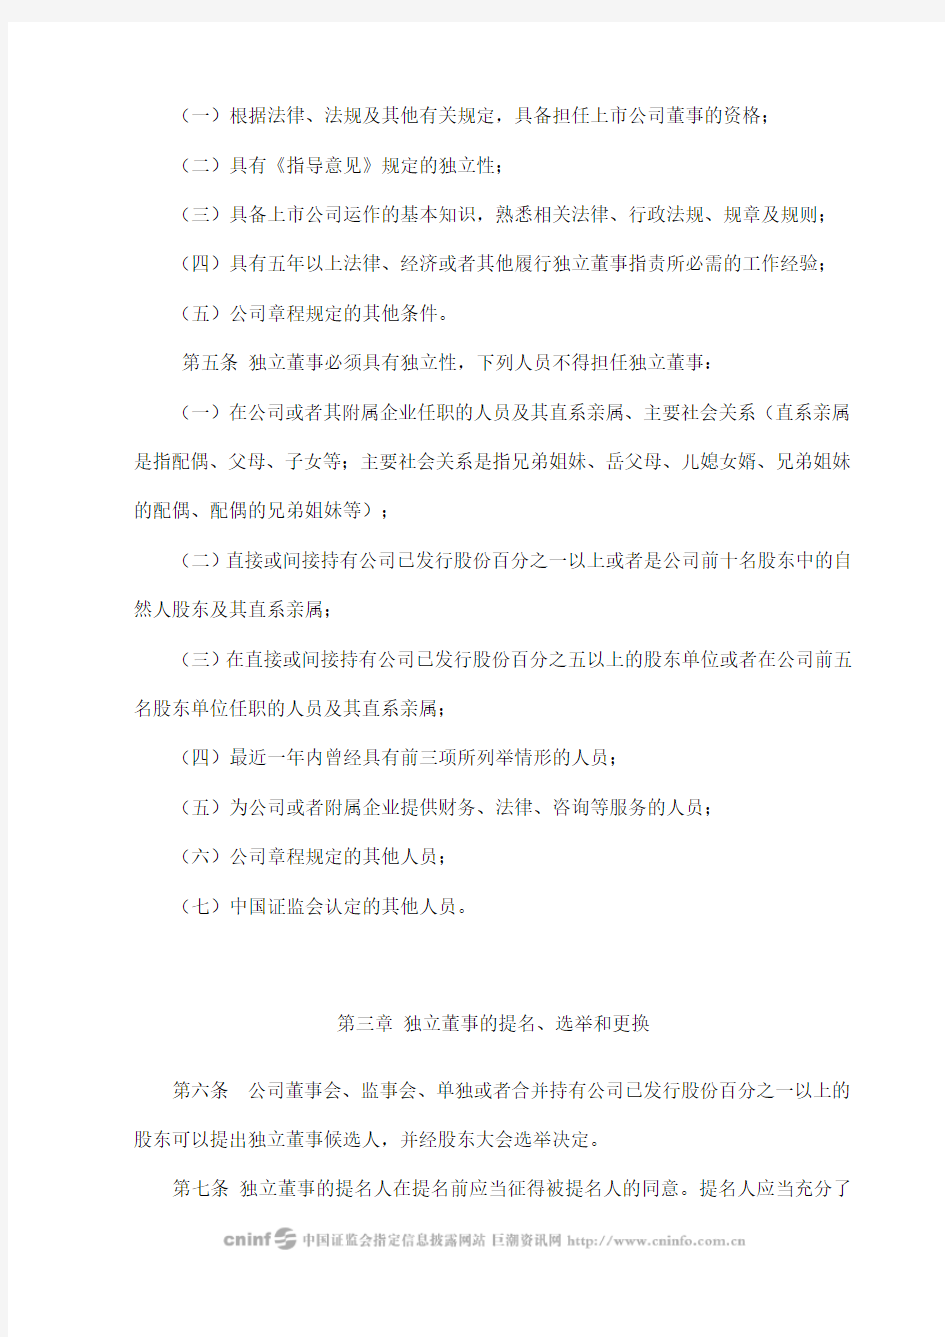 中联电气：独立董事工作制度(2010年1月) 2010-02-01